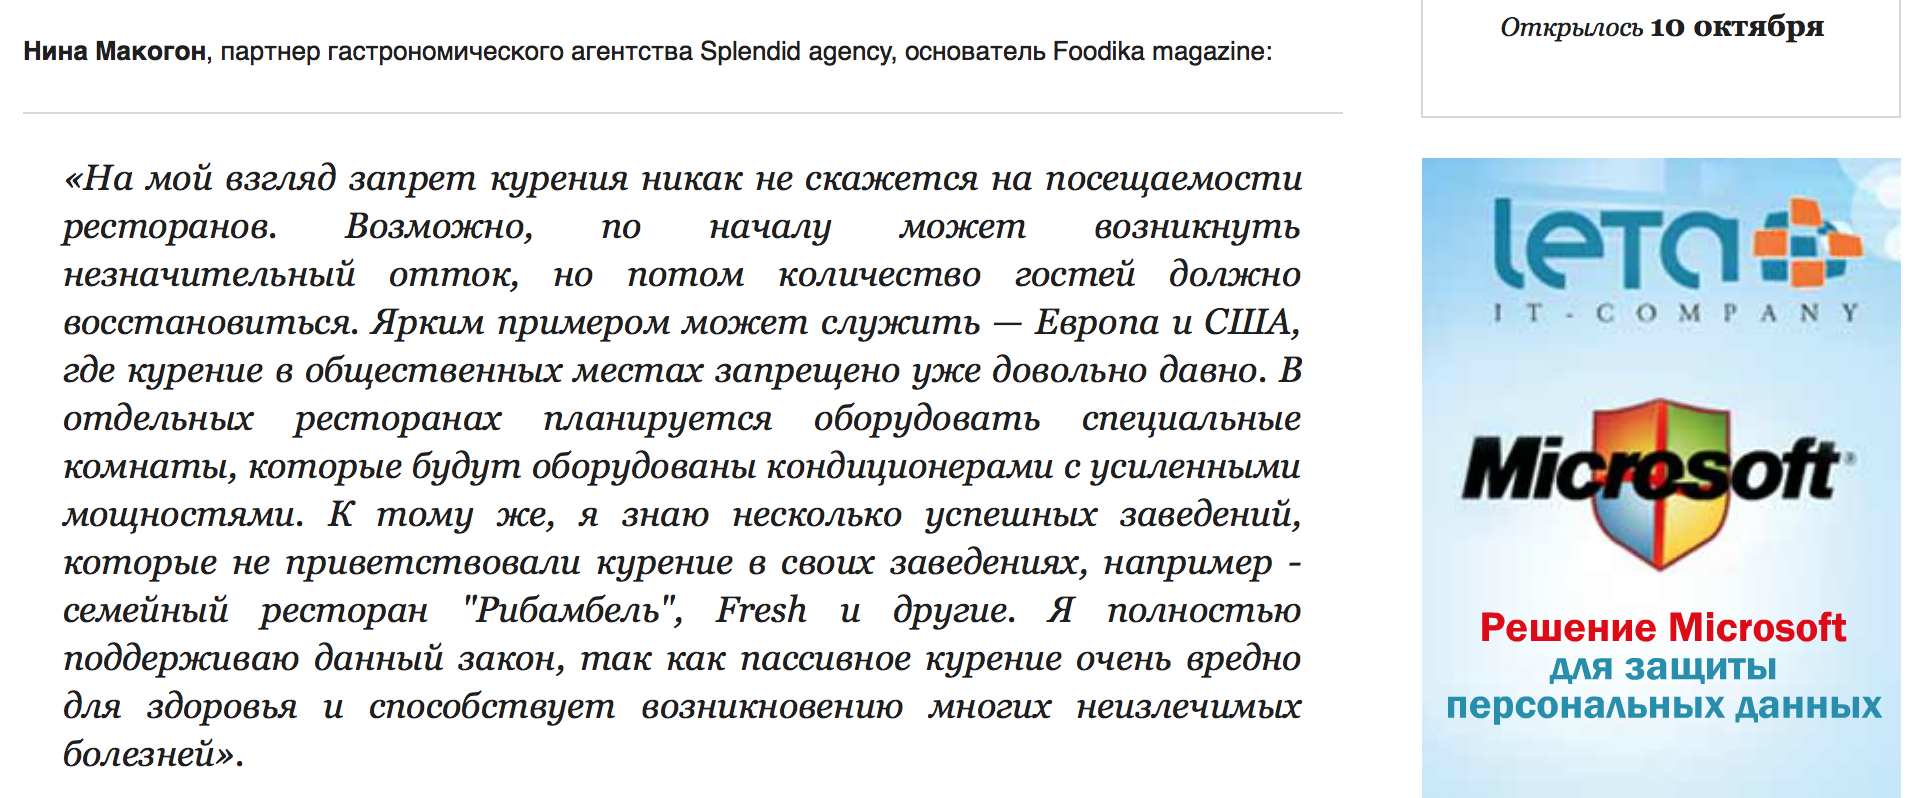 foodika.ru